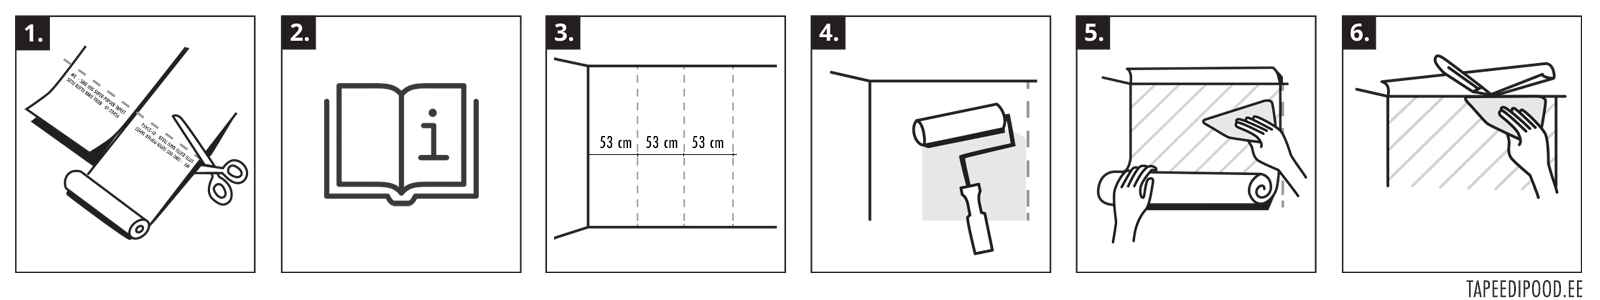 Инструкция по поклейке флизелиновых обоев с шириной полотна 53 см